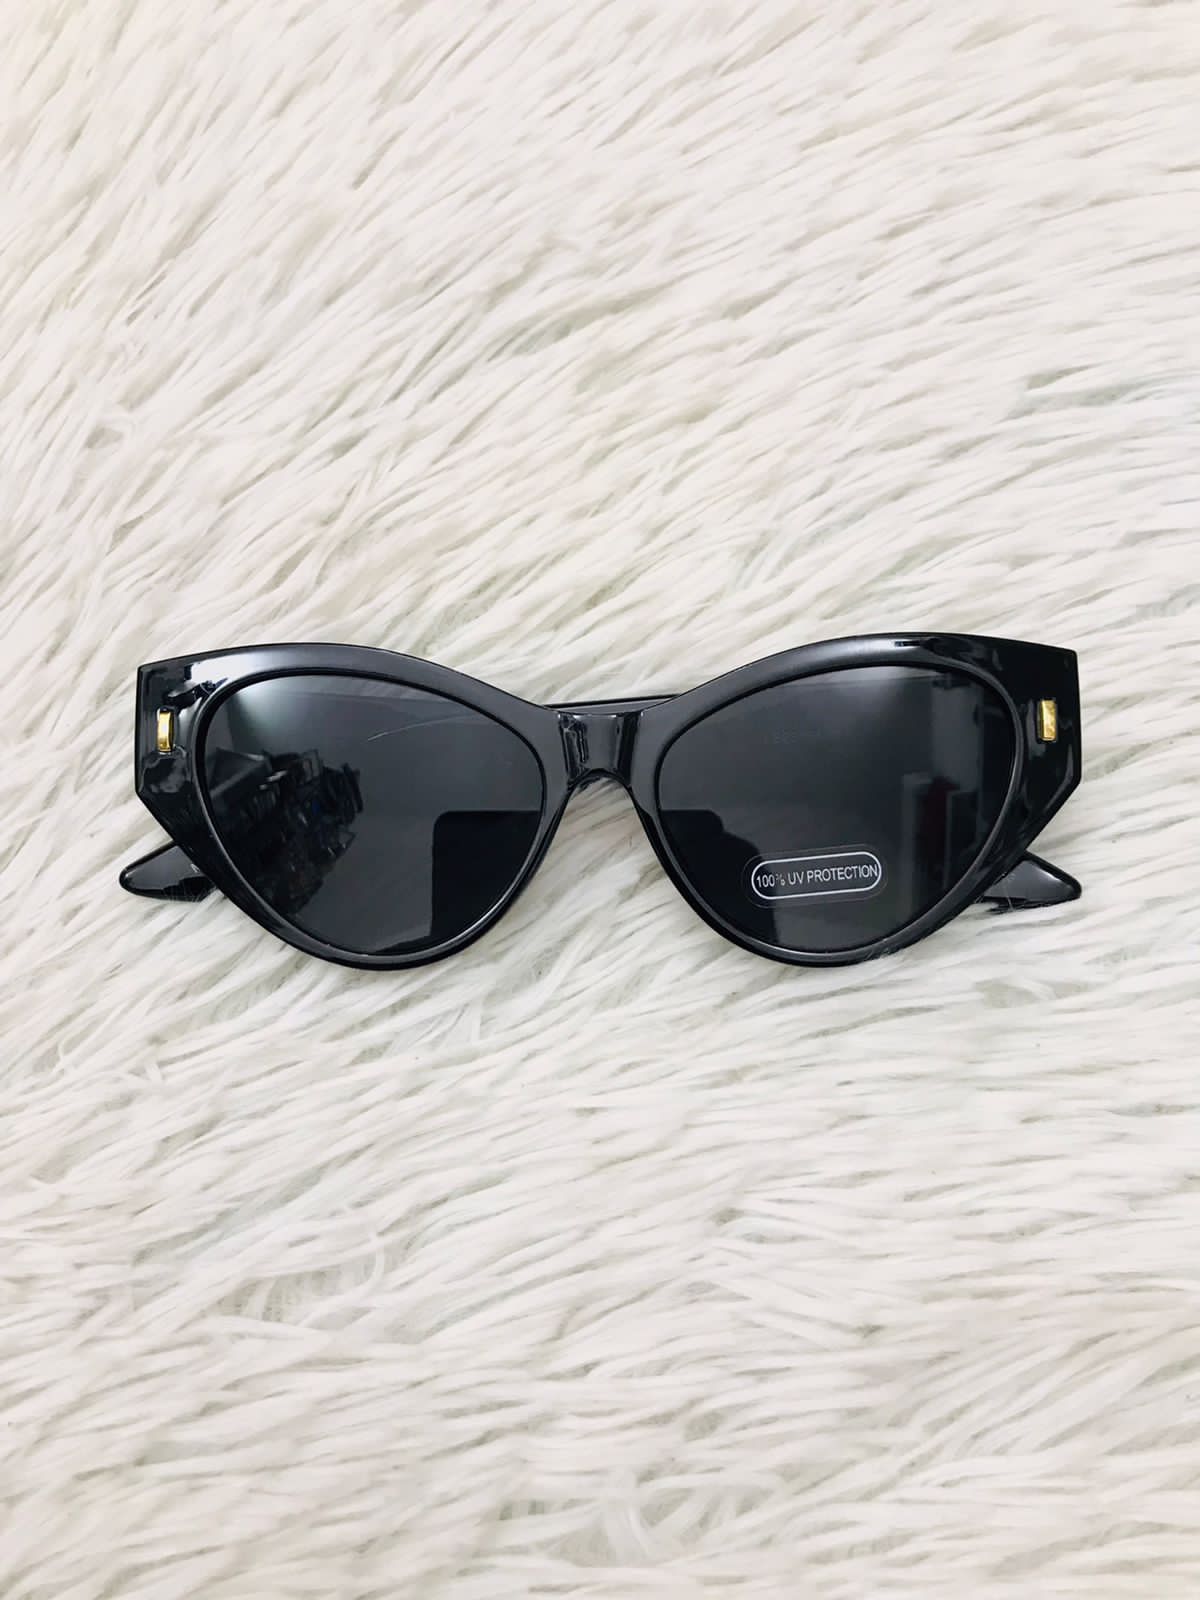 Lentes Fashion Nova original negro estilo ojo de gato y pequeño detalle en dorado al lado, PROTECCIÓN UV 100